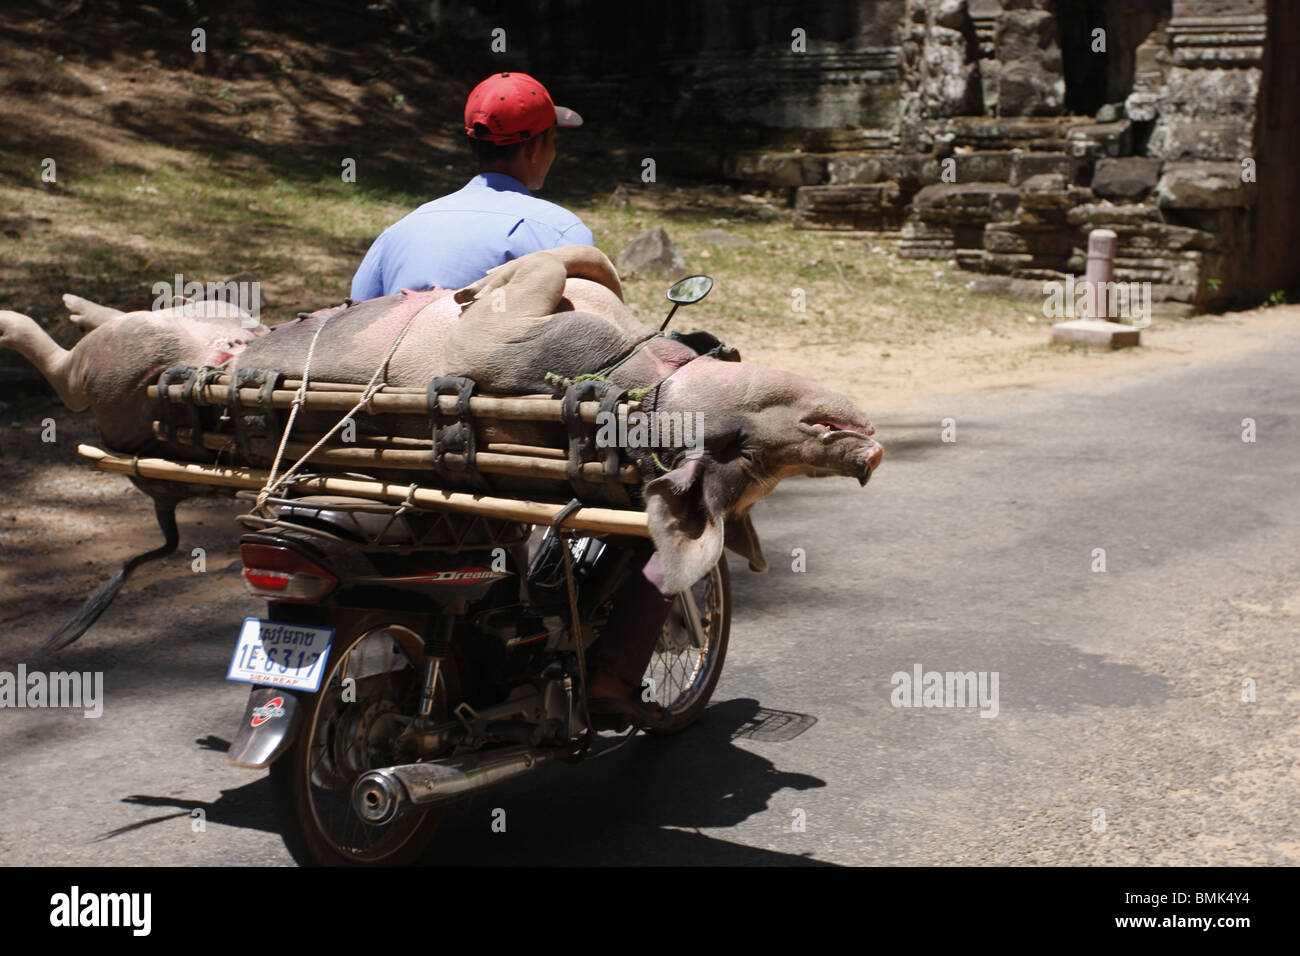 Un motocycliste durs un cochon par la Porte Sud d'Angkor Thom pour le marché, Siem Reap, Cambodge Banque D'Images